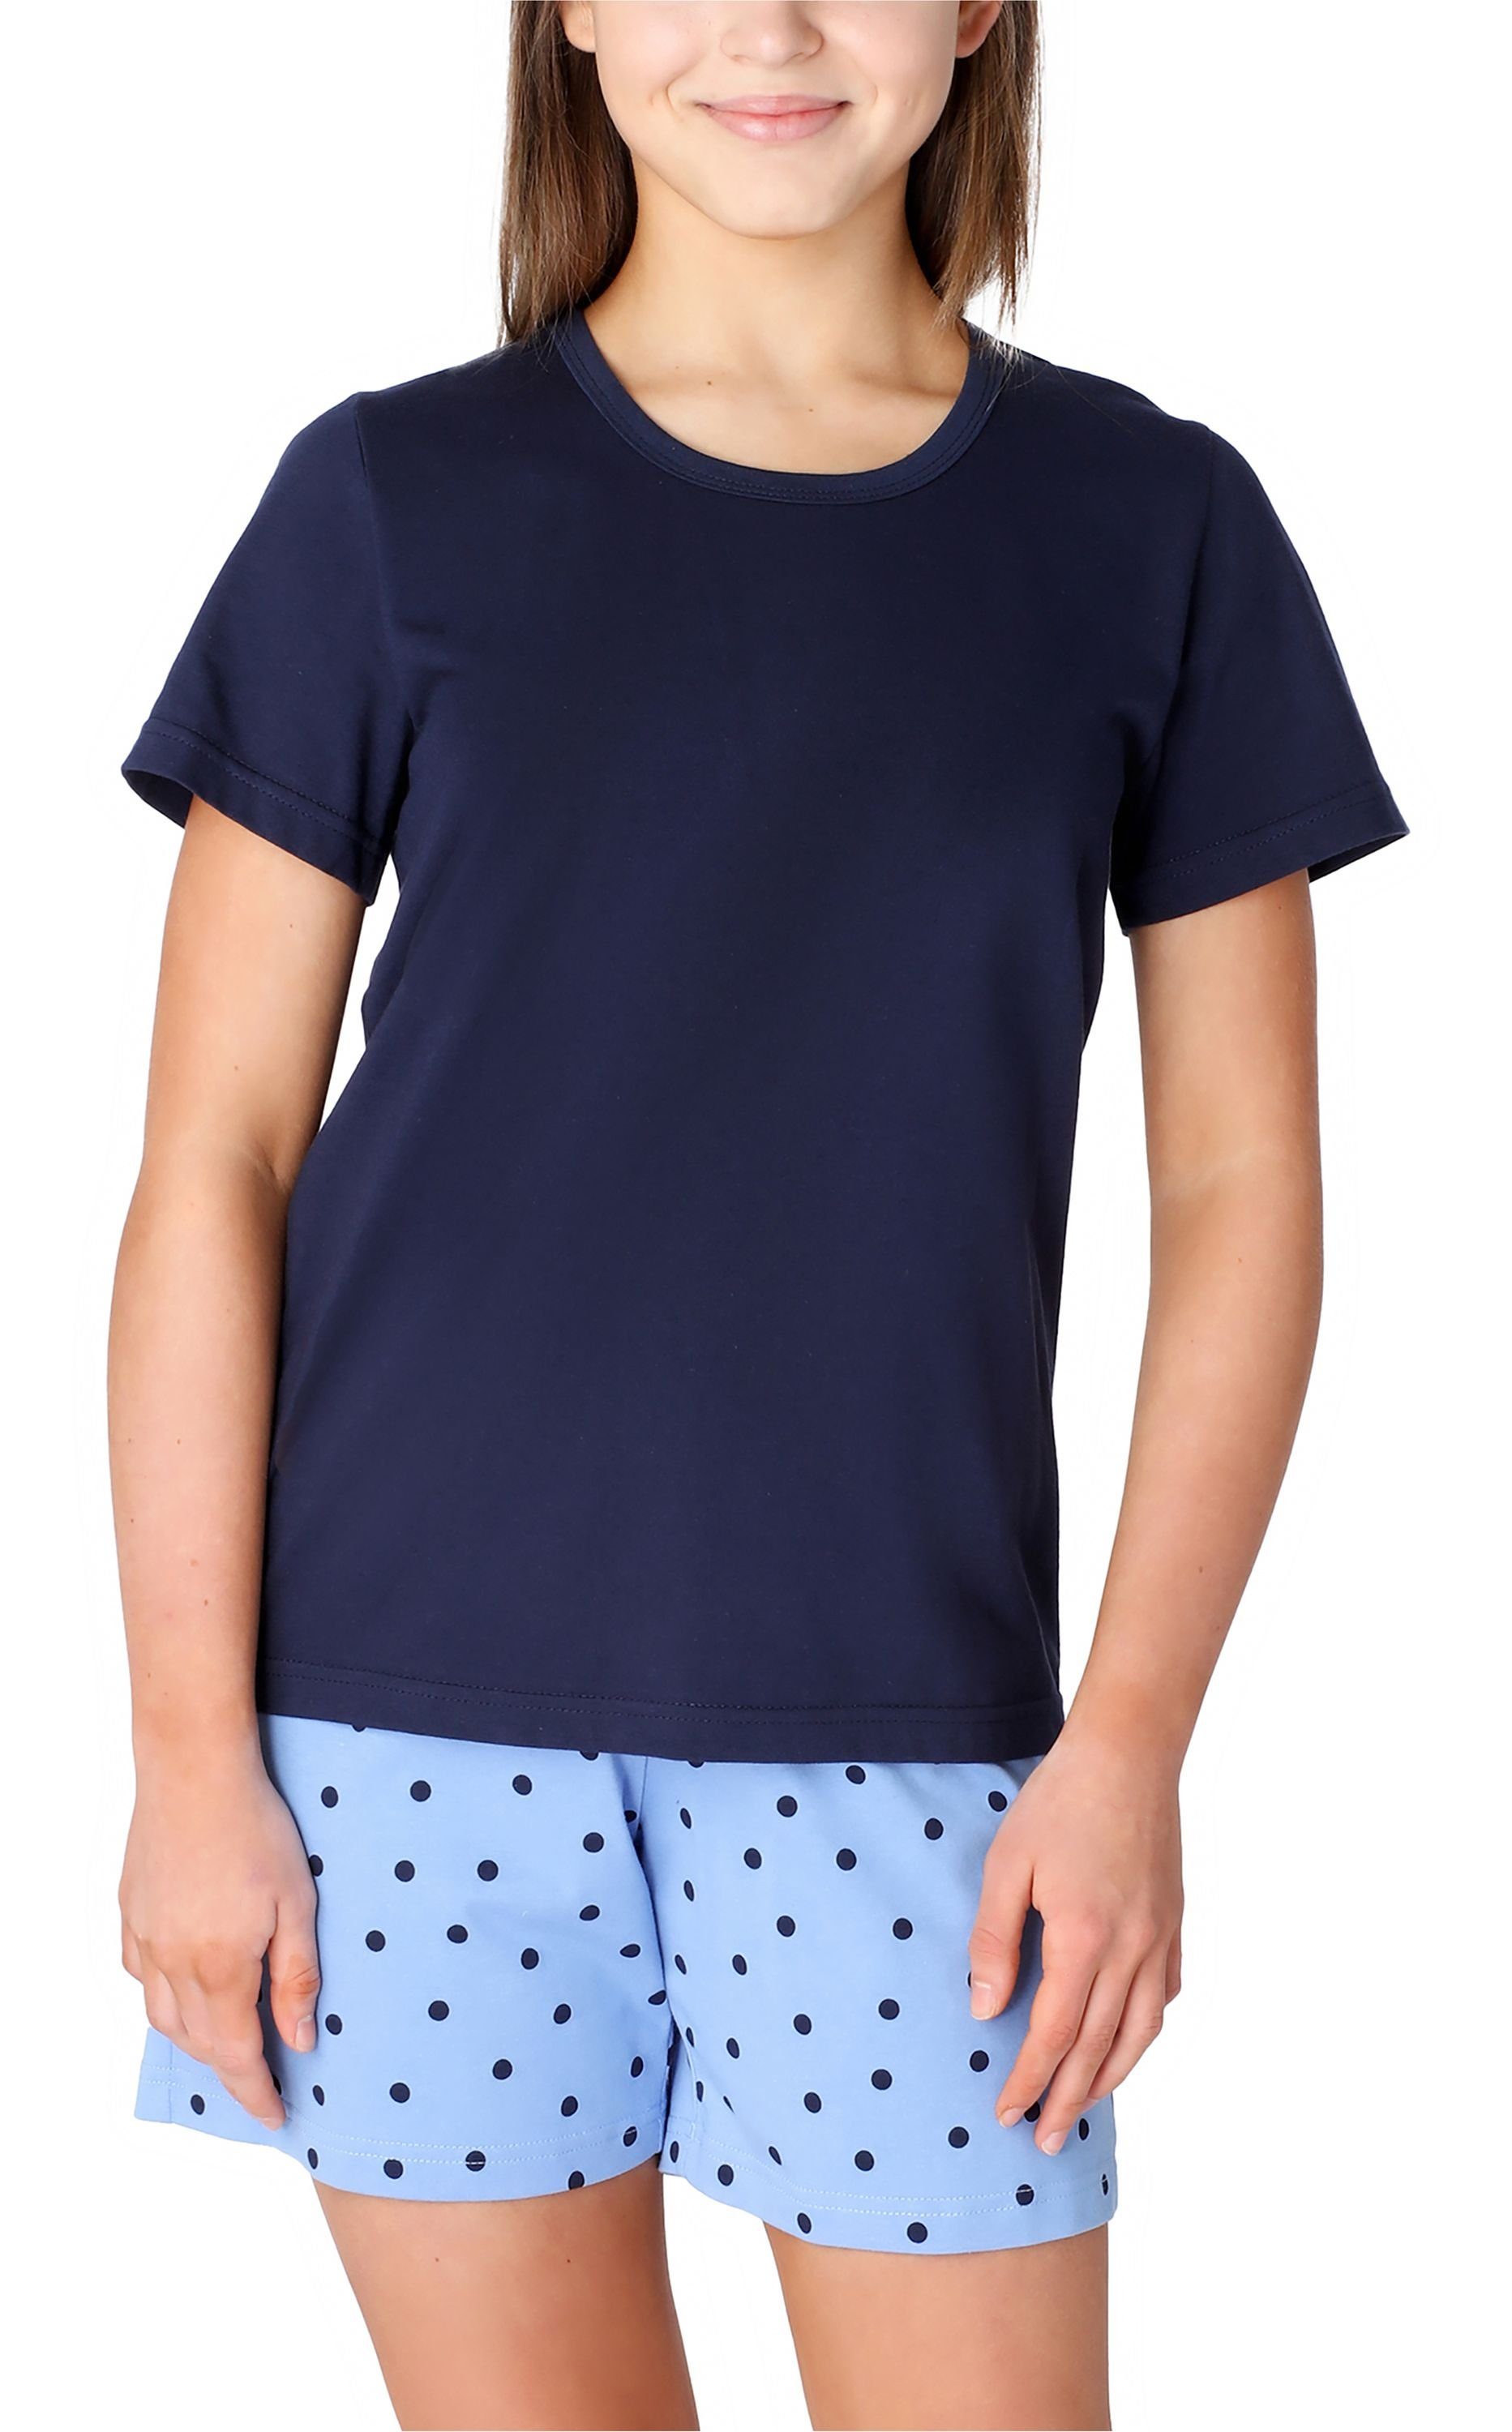 Style Mädchen MS10-265 Set Merry Pyjama Baumwolle Marine/Blau/Punkte Schlafanzug Kurz aus Schlafanzüge